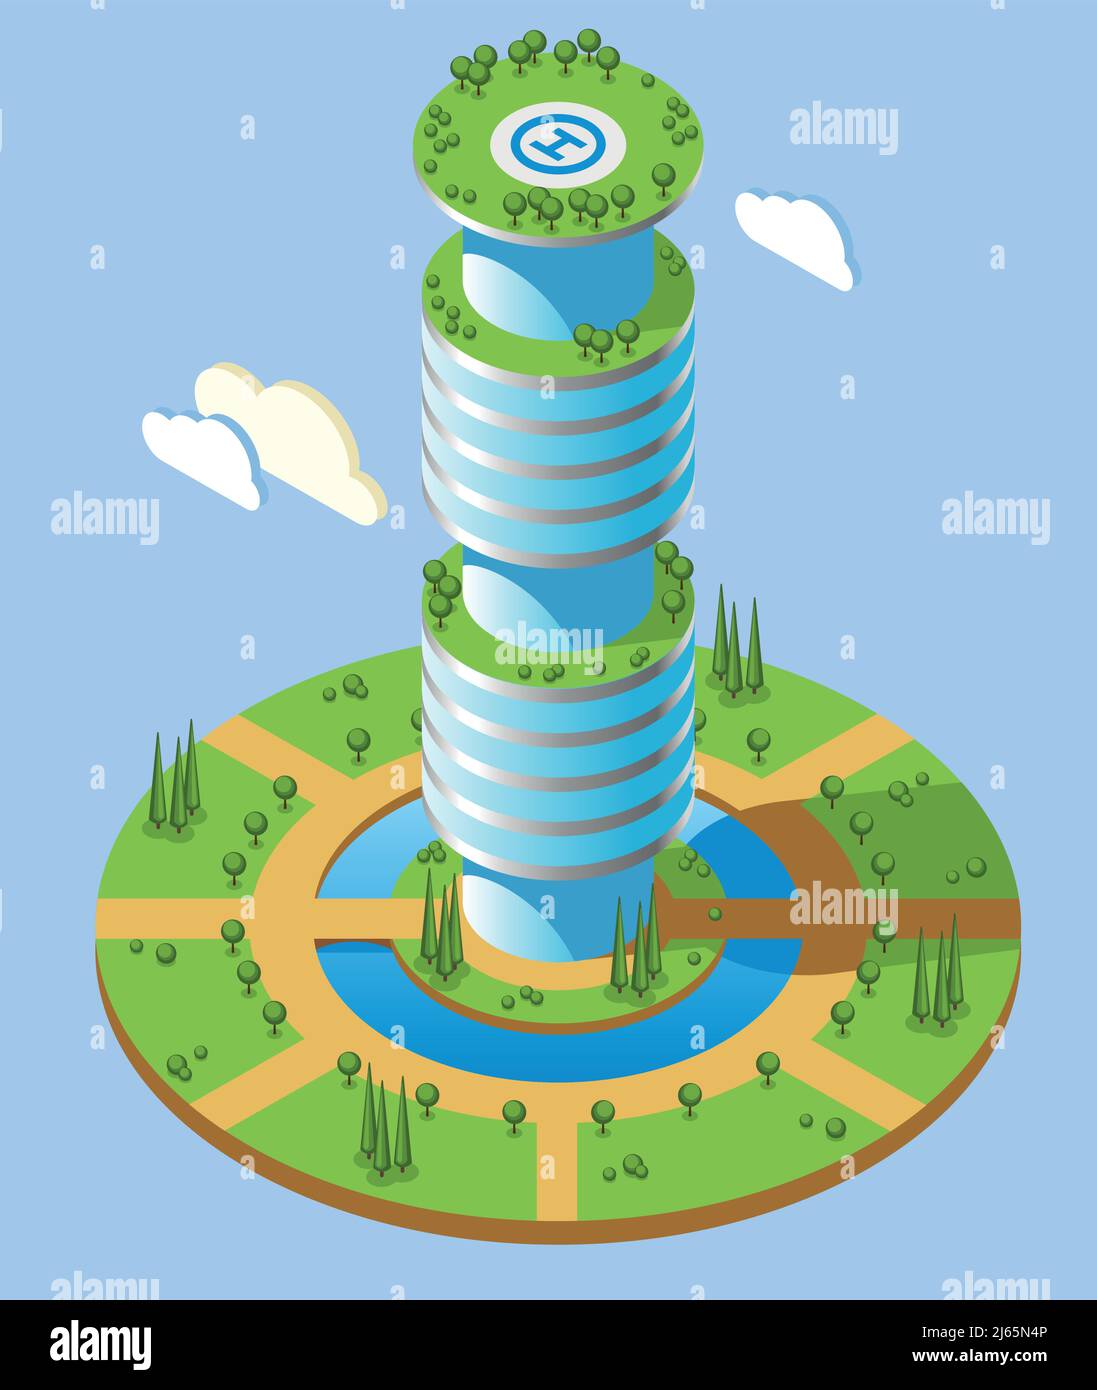 Grattacieli futuristici isometrici di forma rotonda con alto ufficio creazione e zone verdi intorno all'illustrazione vettoriale Illustrazione Vettoriale